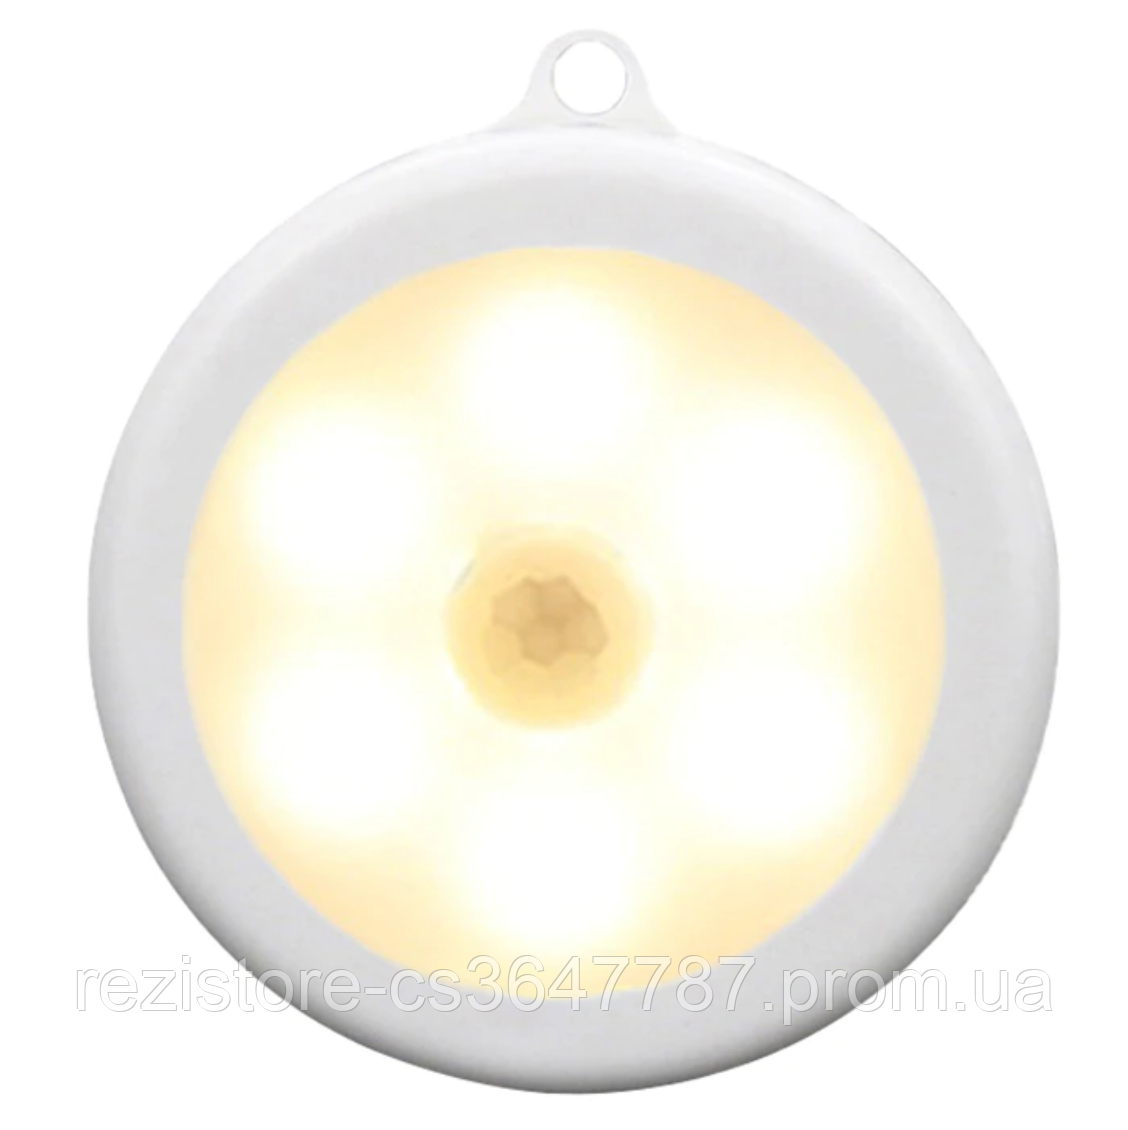 LED світильник з датчиком руху для дому - зручне освітлення шафи, комода, підсобки - теплий білий